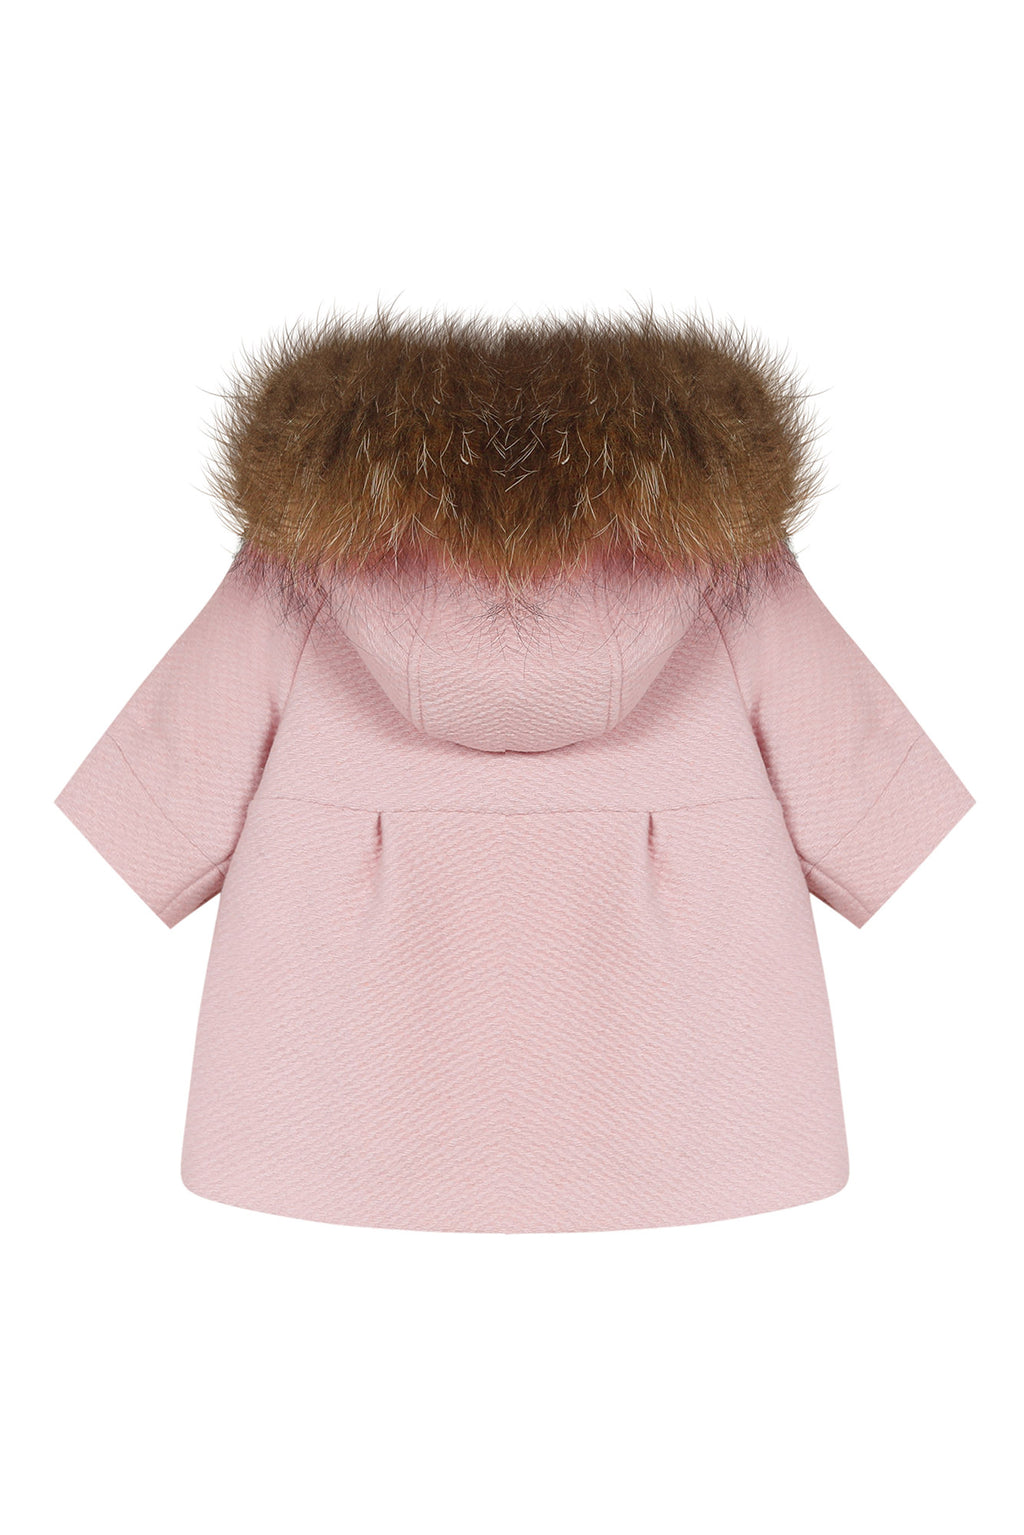 Coat - woolen Pale pink